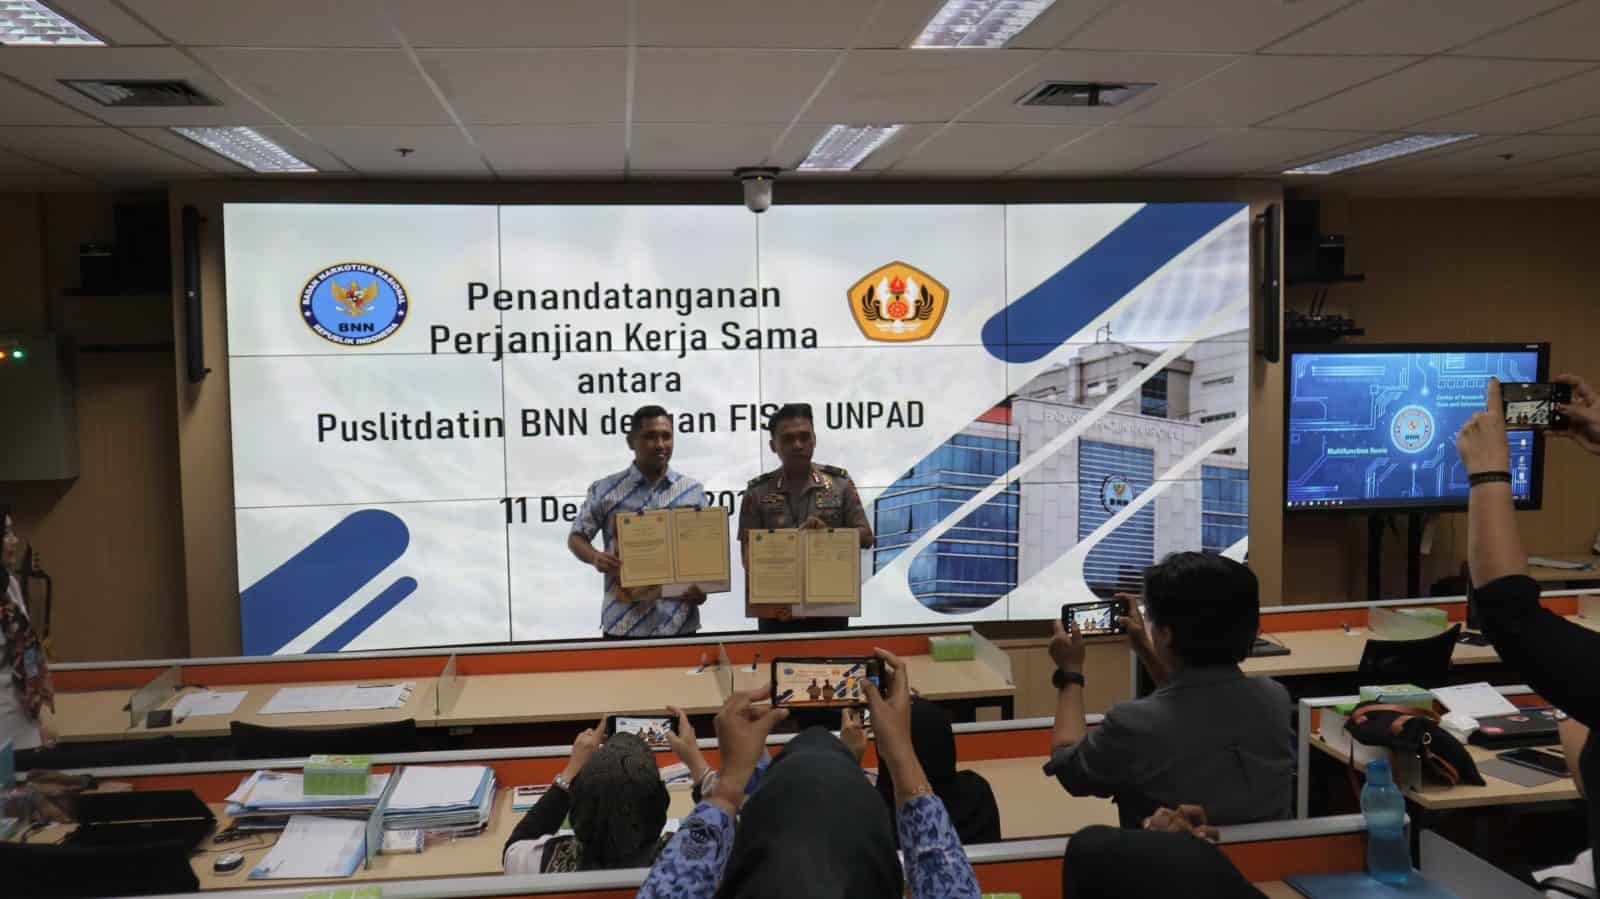 Penandatanganan PKS antara Puslitdatin BNN dengan Fakultas Ilmu Sosial dan Ilmu Politik Universitas Padjajaran